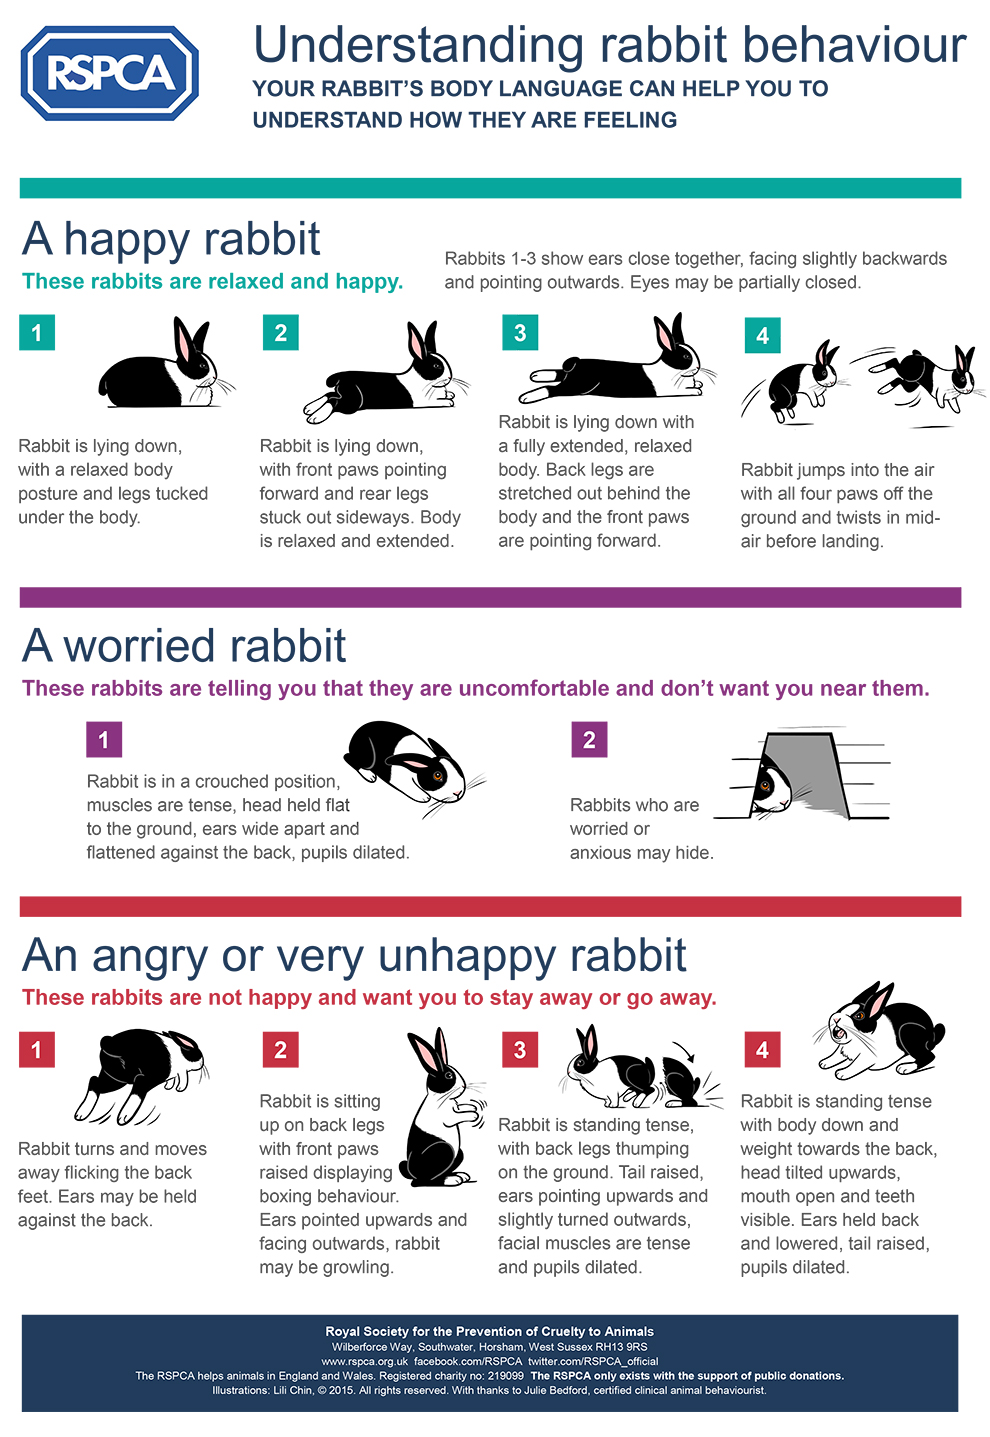 Understanding Rabbit Behavior